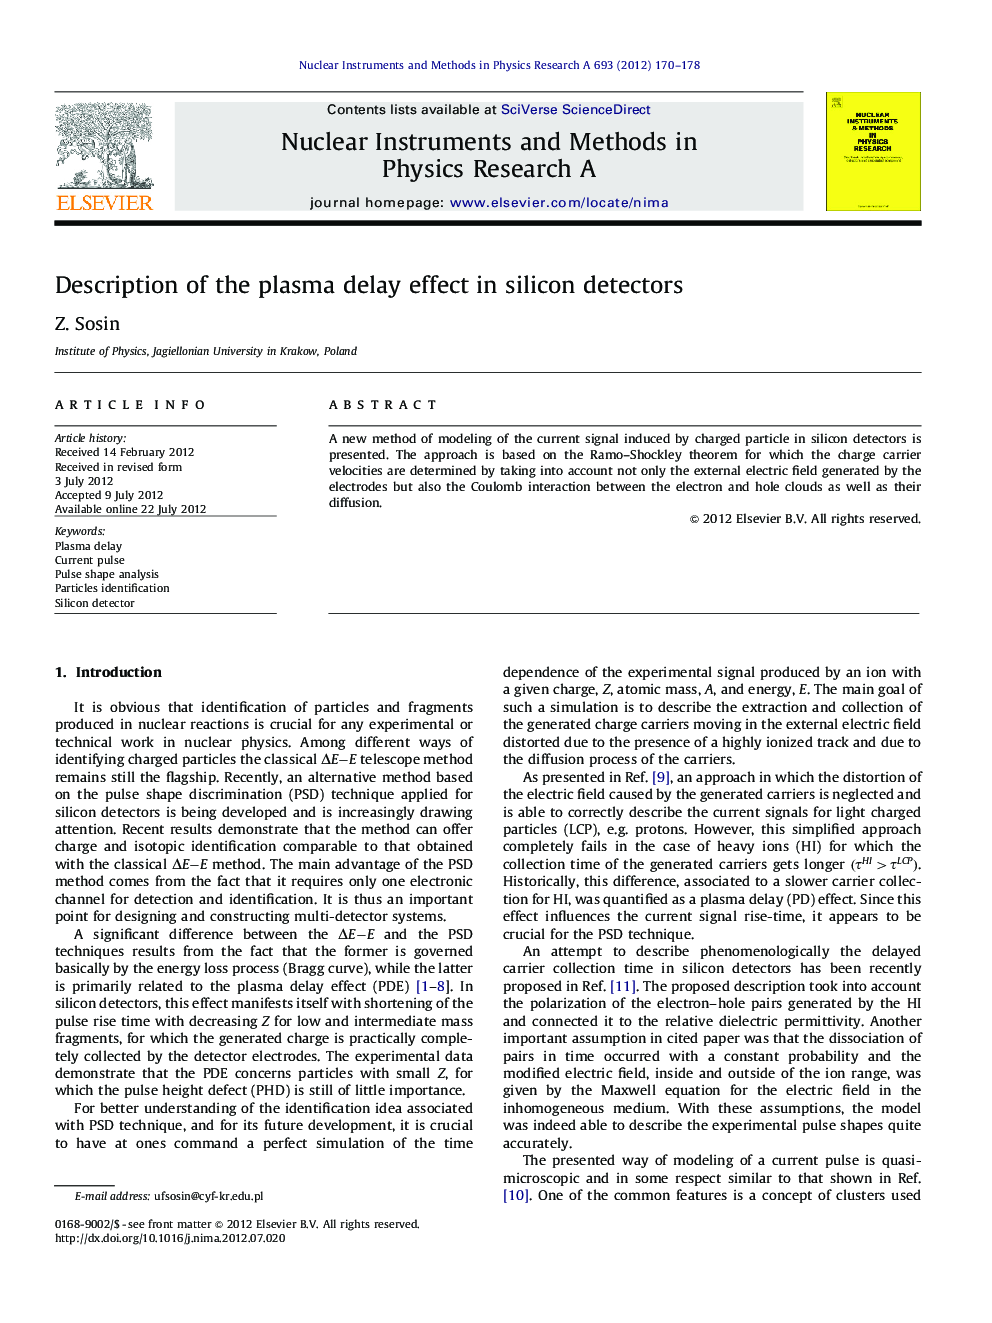 Description of the plasma delay effect in silicon detectors